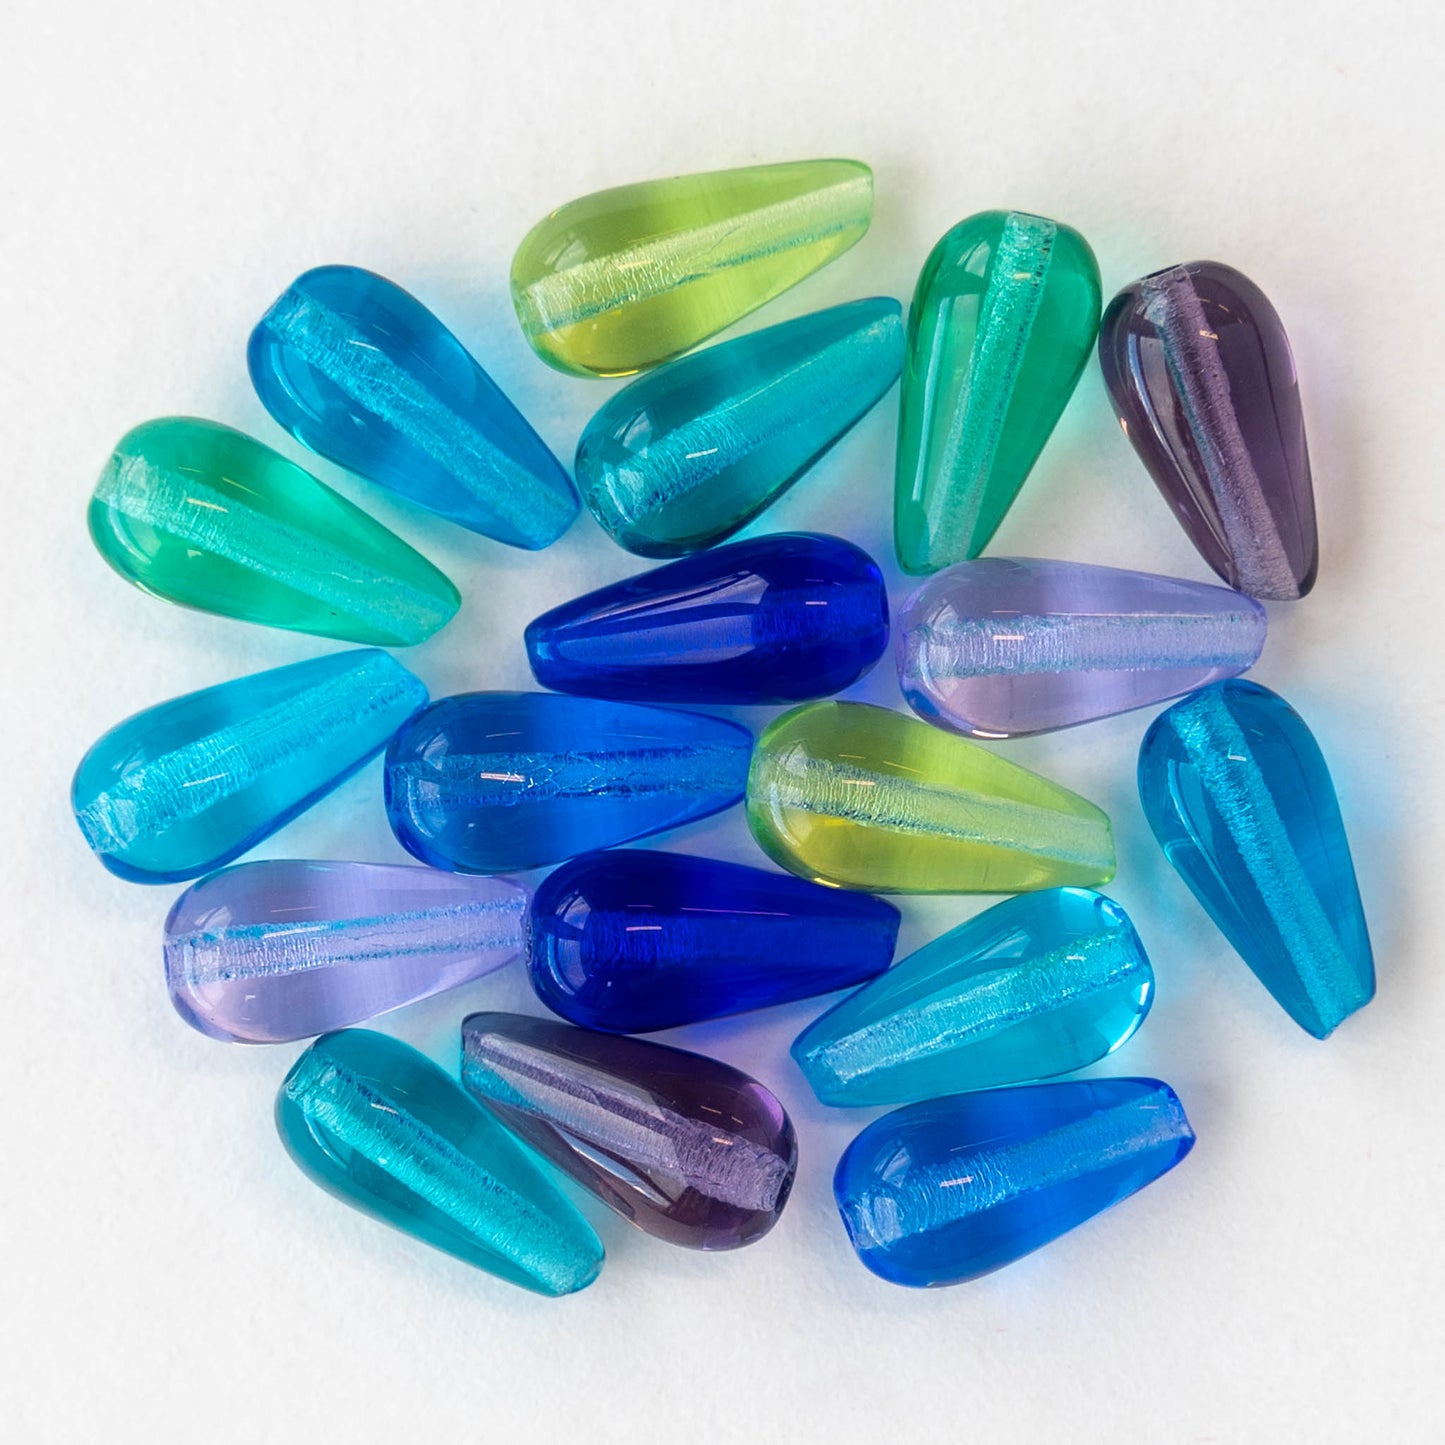 12mm Long Drill Glass Teardrop Beads - Assortment - 18 Beads